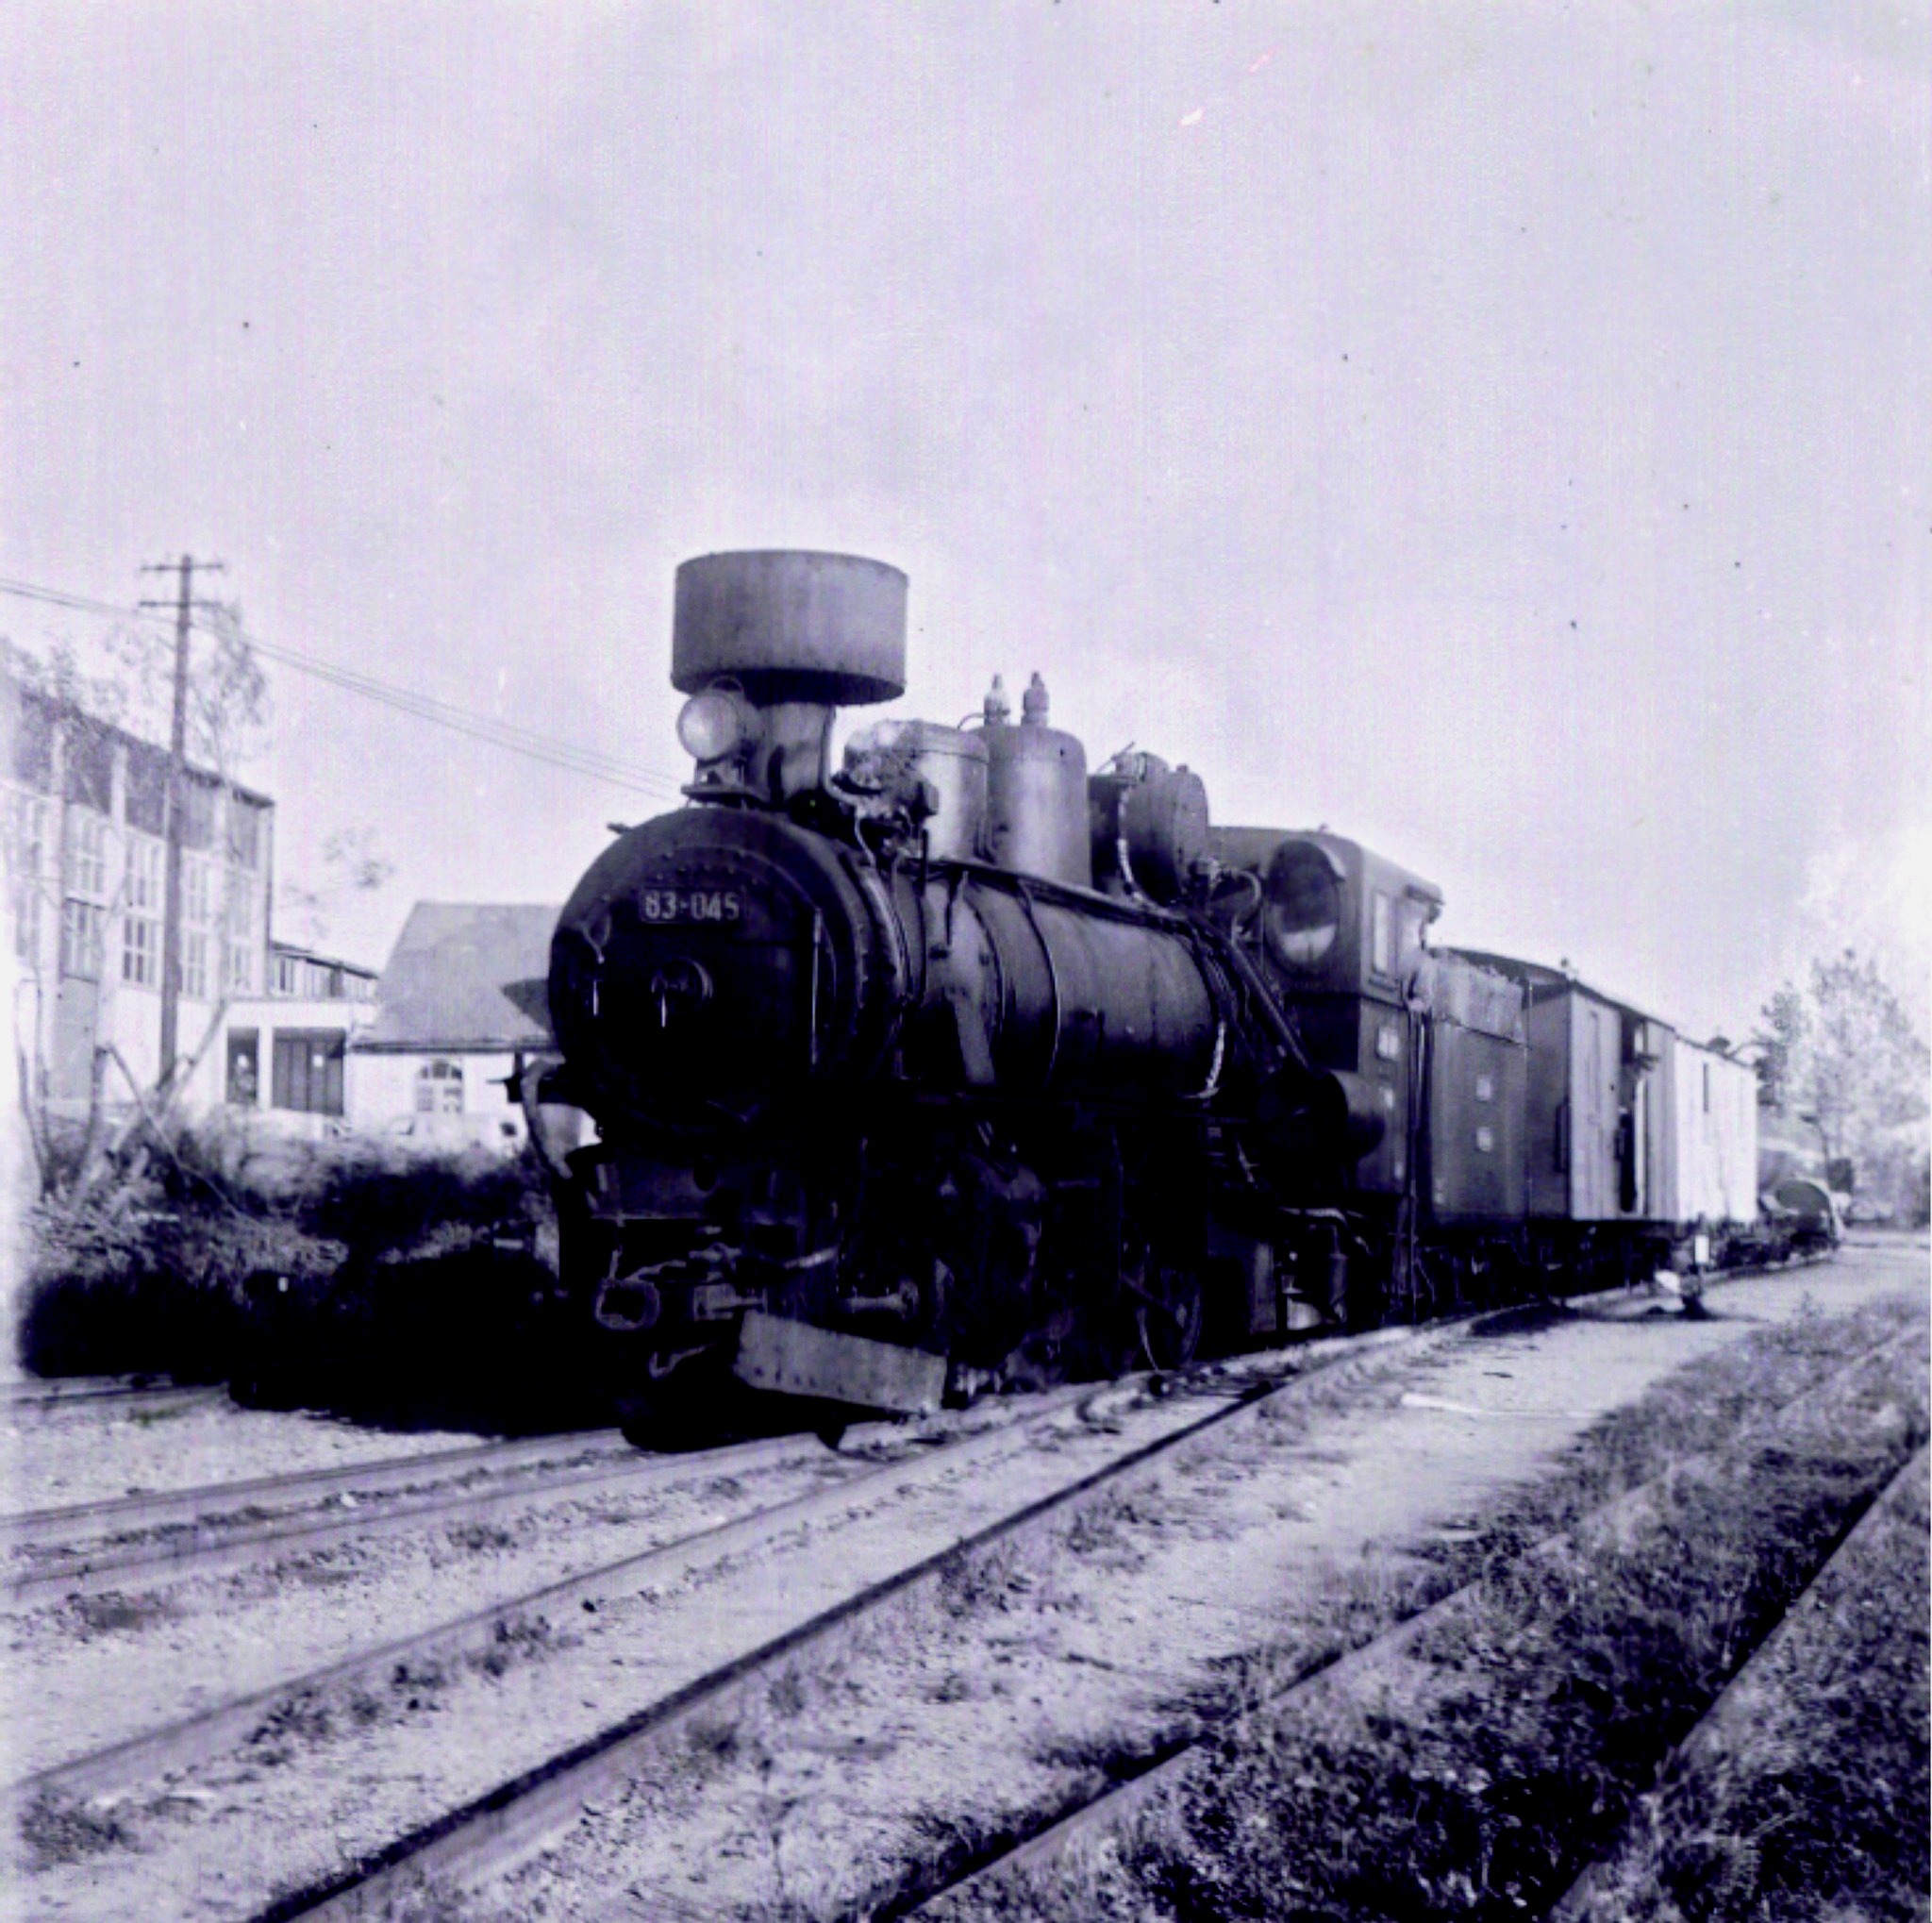 Parna lokomotiva serije 83-045 na stanici Aran.jpg